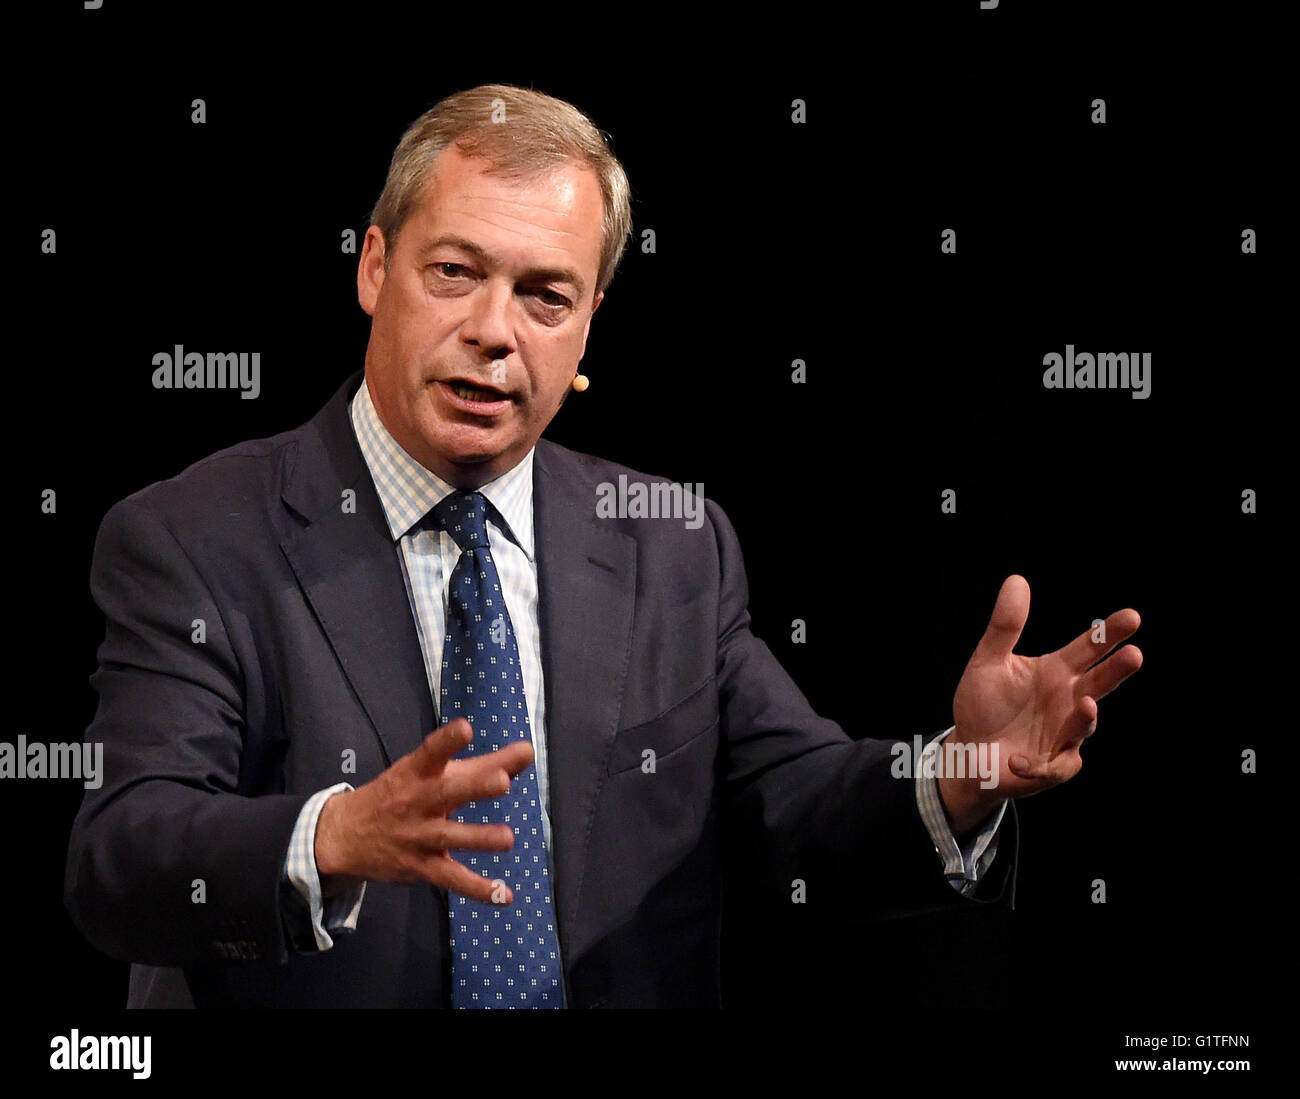 Nigel Farage speaks at a debate on Europe Stock Photo